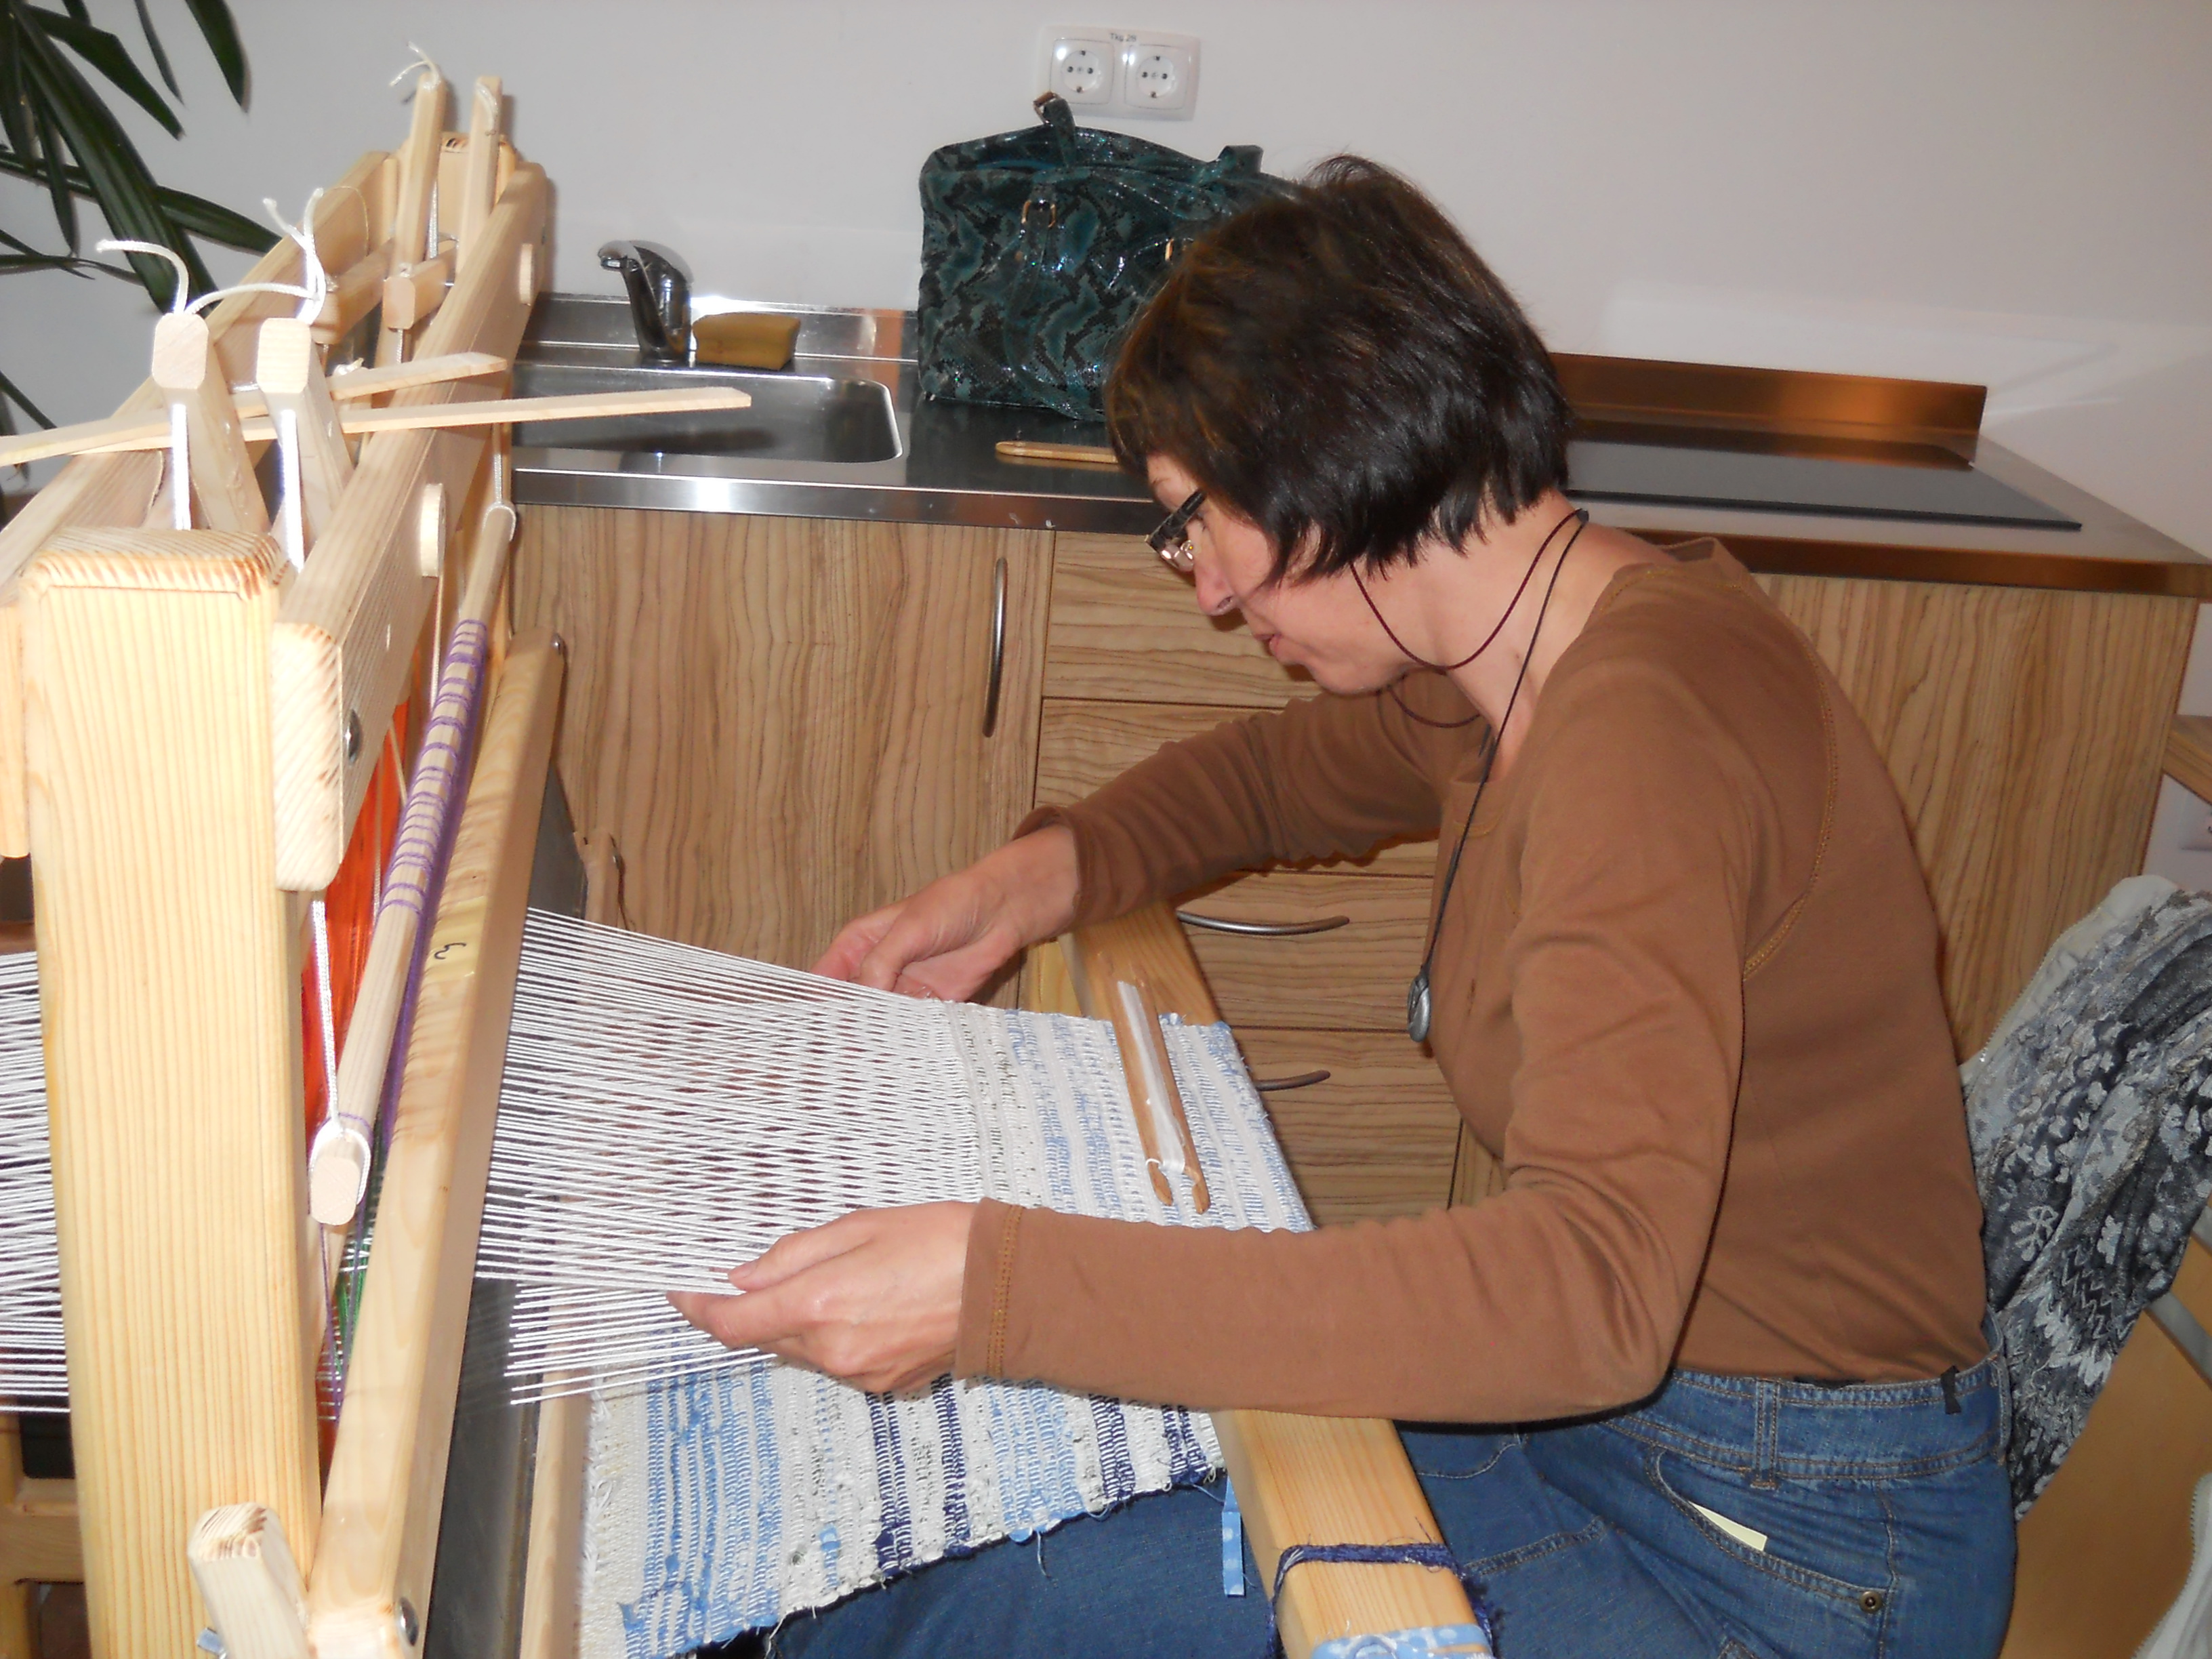 Osnovni tečaj ročnega tkanja na statvah – Kranj od 14. marca do 17. marca 2015